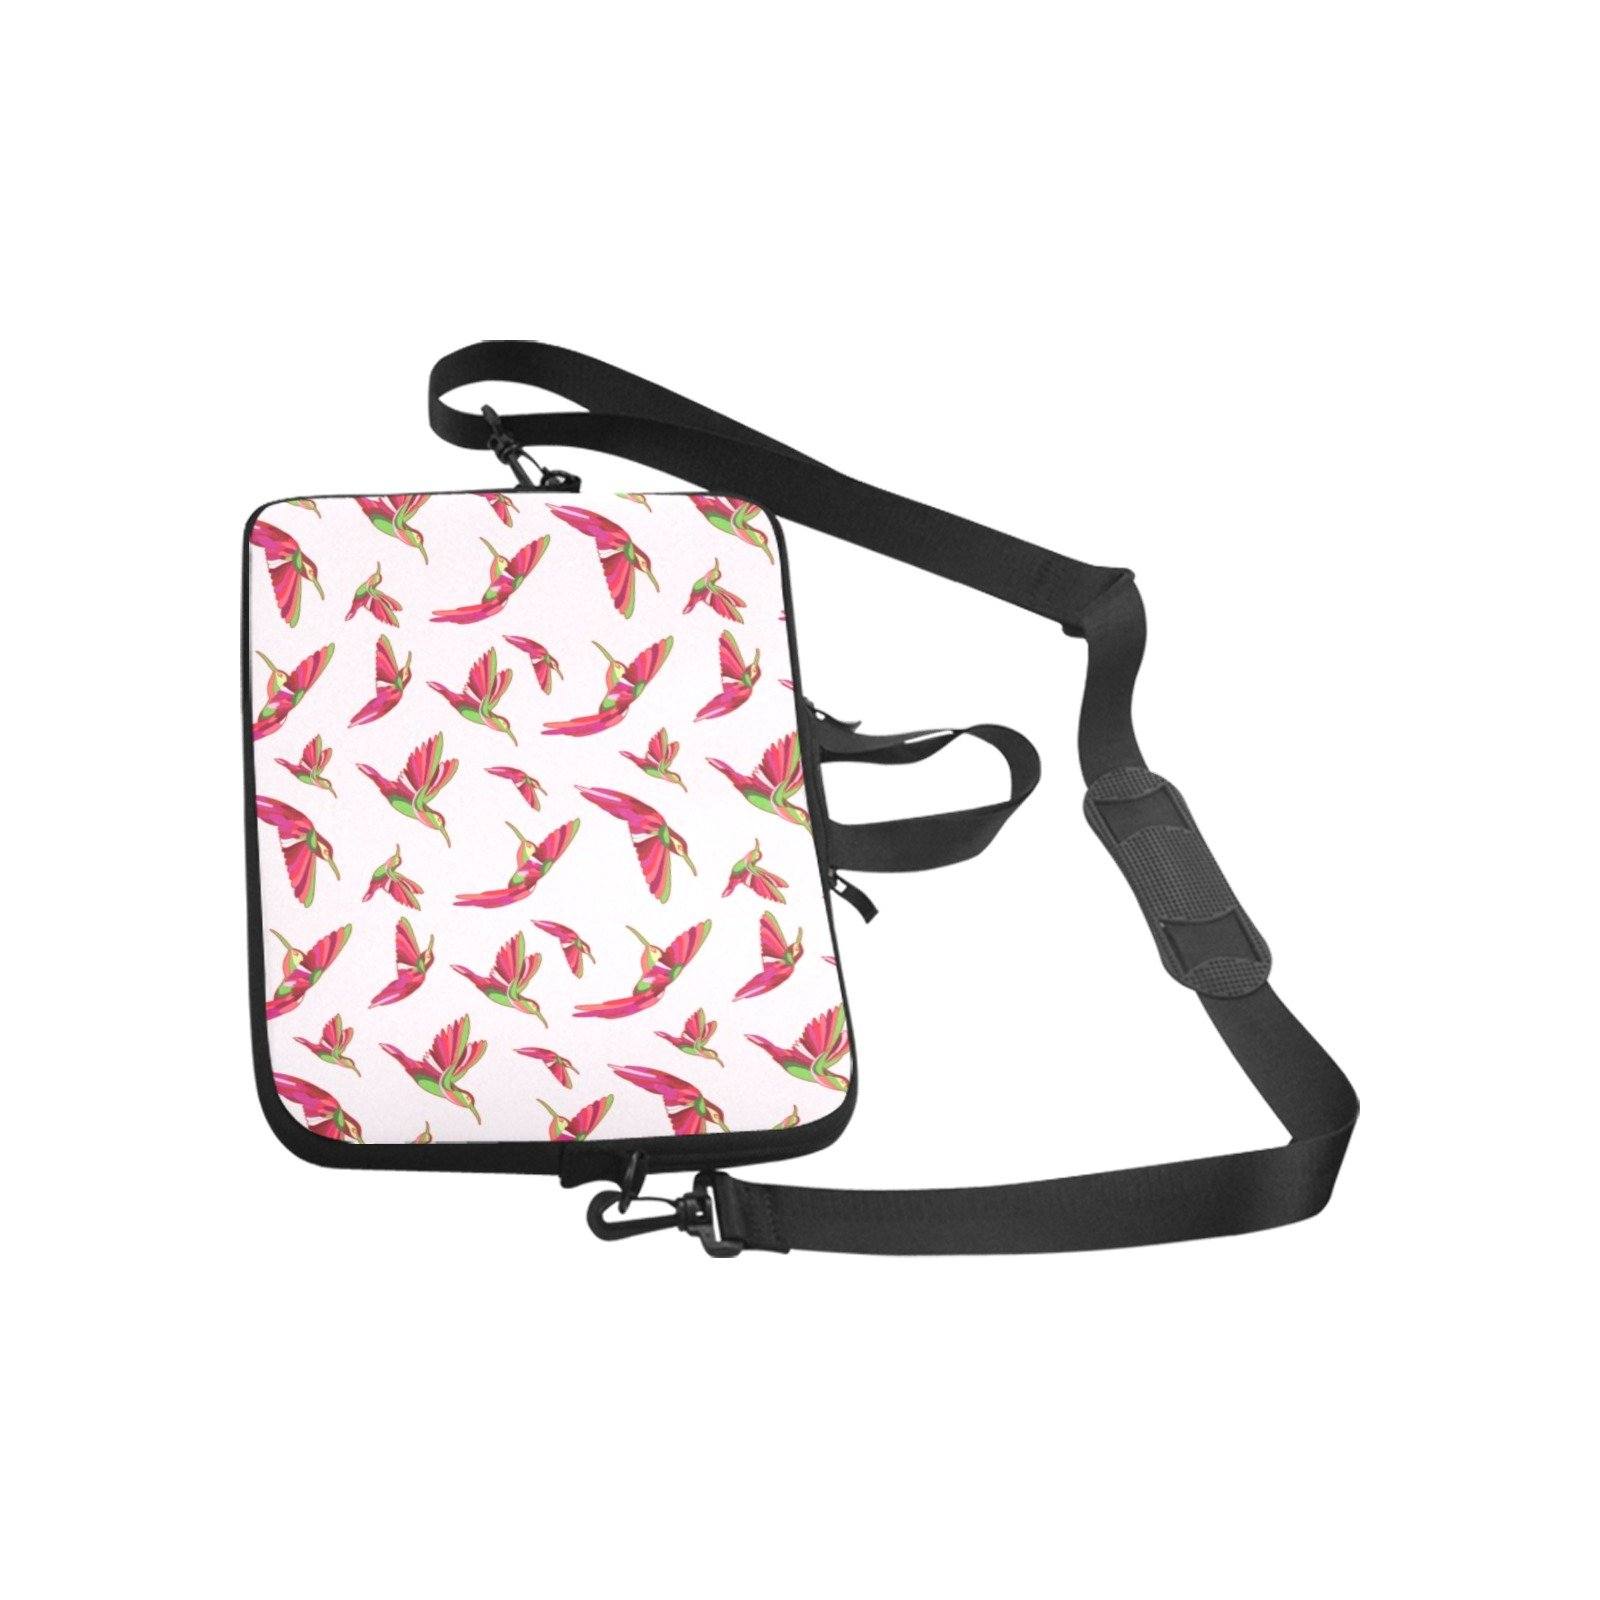 Red Swift Colourful Laptop Handbags 14" bag e-joyer 